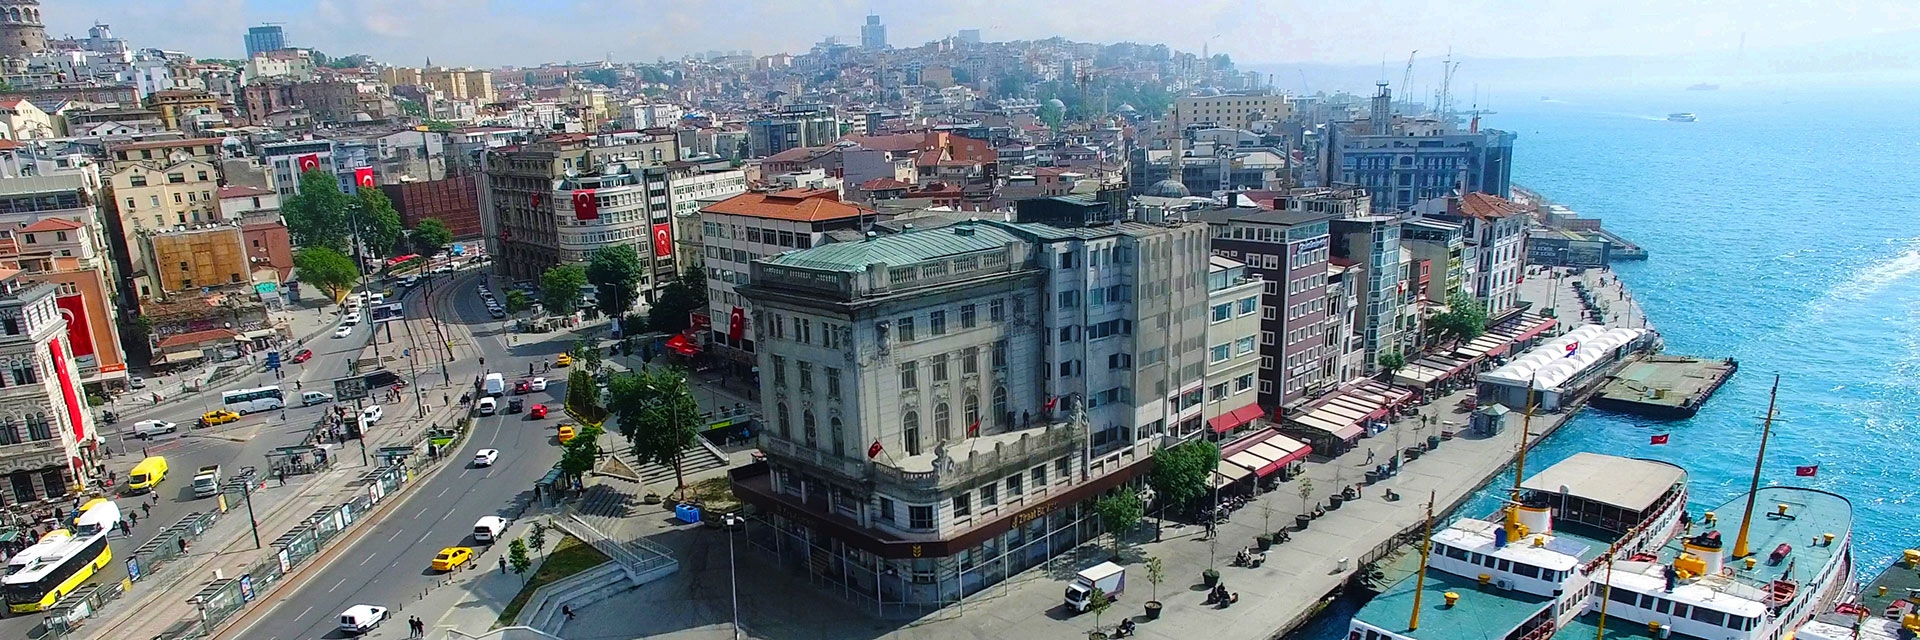 İstanbul'da Özgün bir Mimari: Karaköy Ziraat Bankası